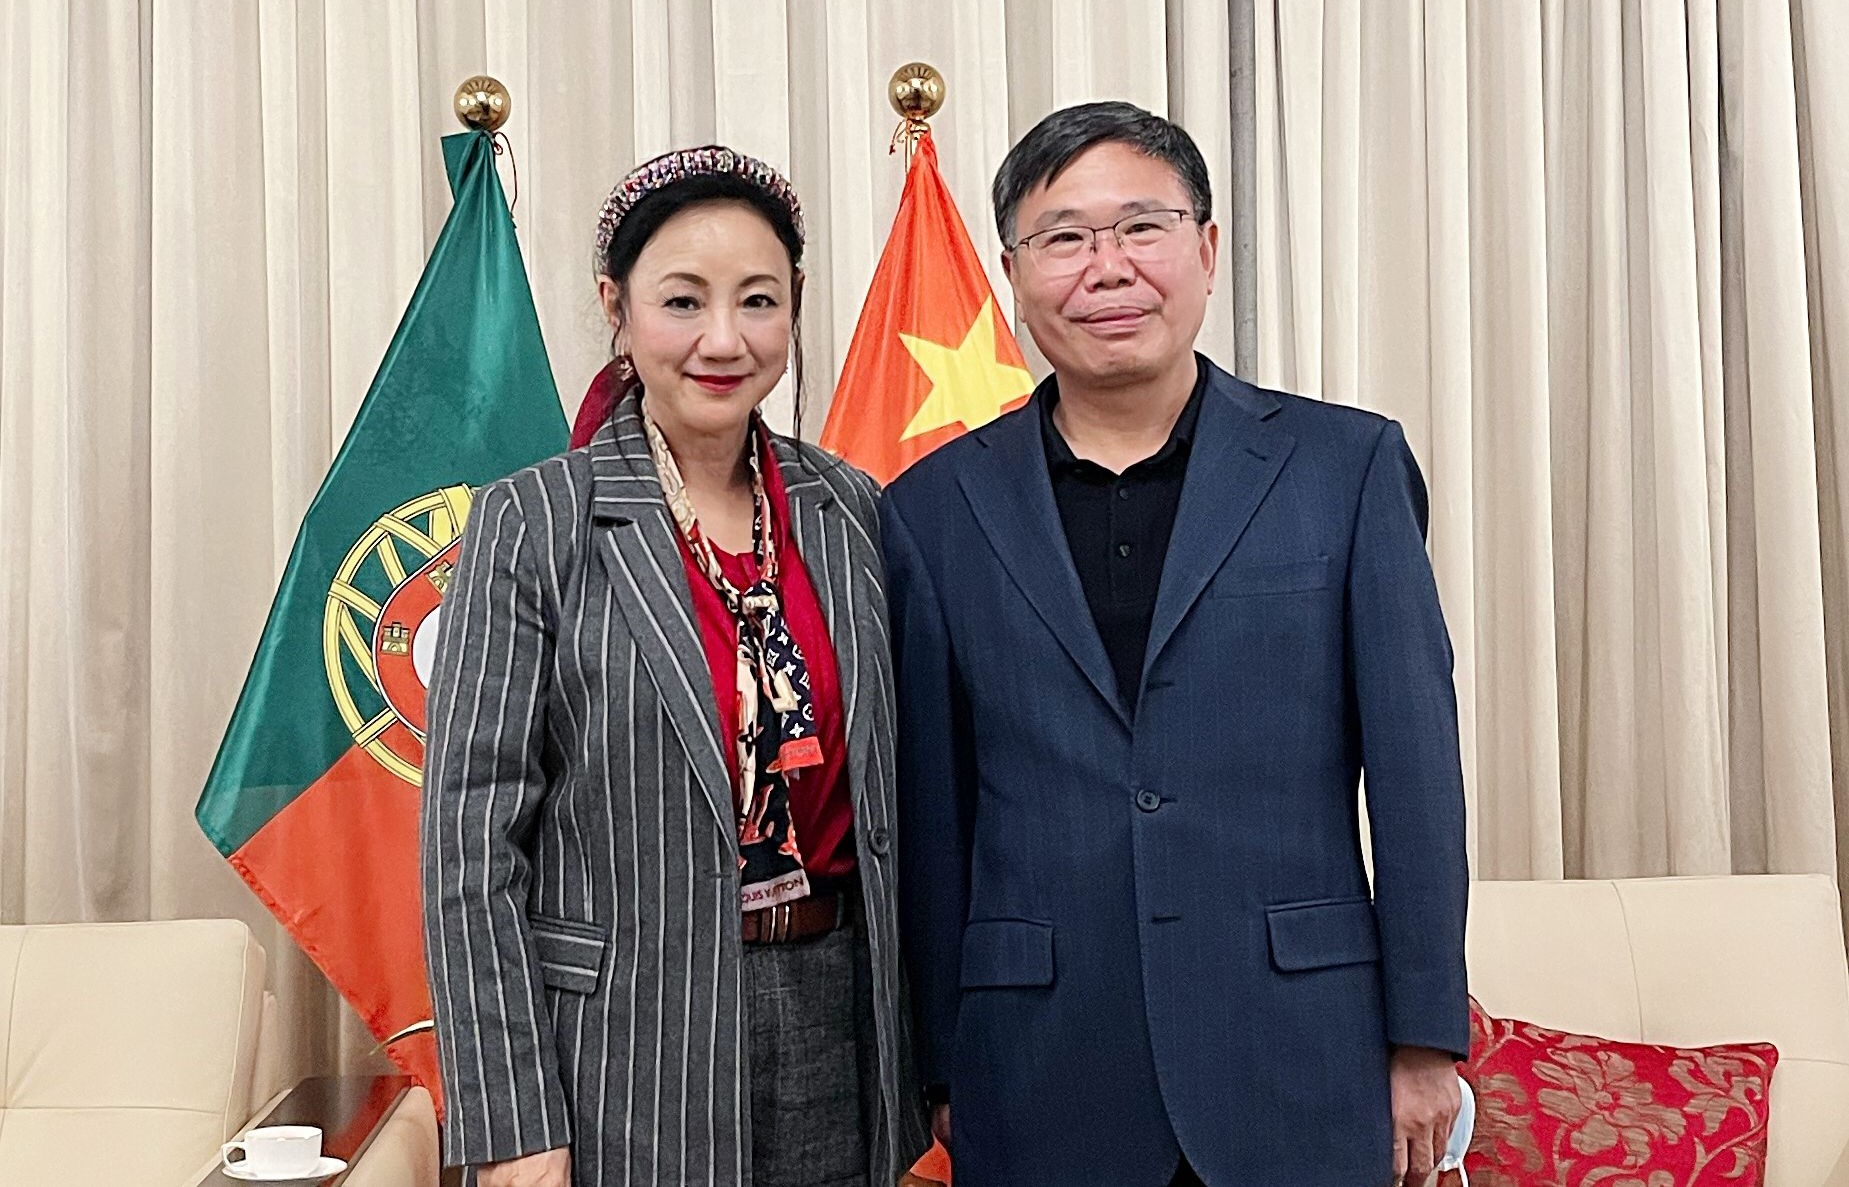 Comendadora Rita Santos, Presidente do Conselho Regional da Ásia e da Oceânia das Comunidades Portuguesas, reuniu-se com Dr. Zhao Bentang, Embaixador da China em Portugal.